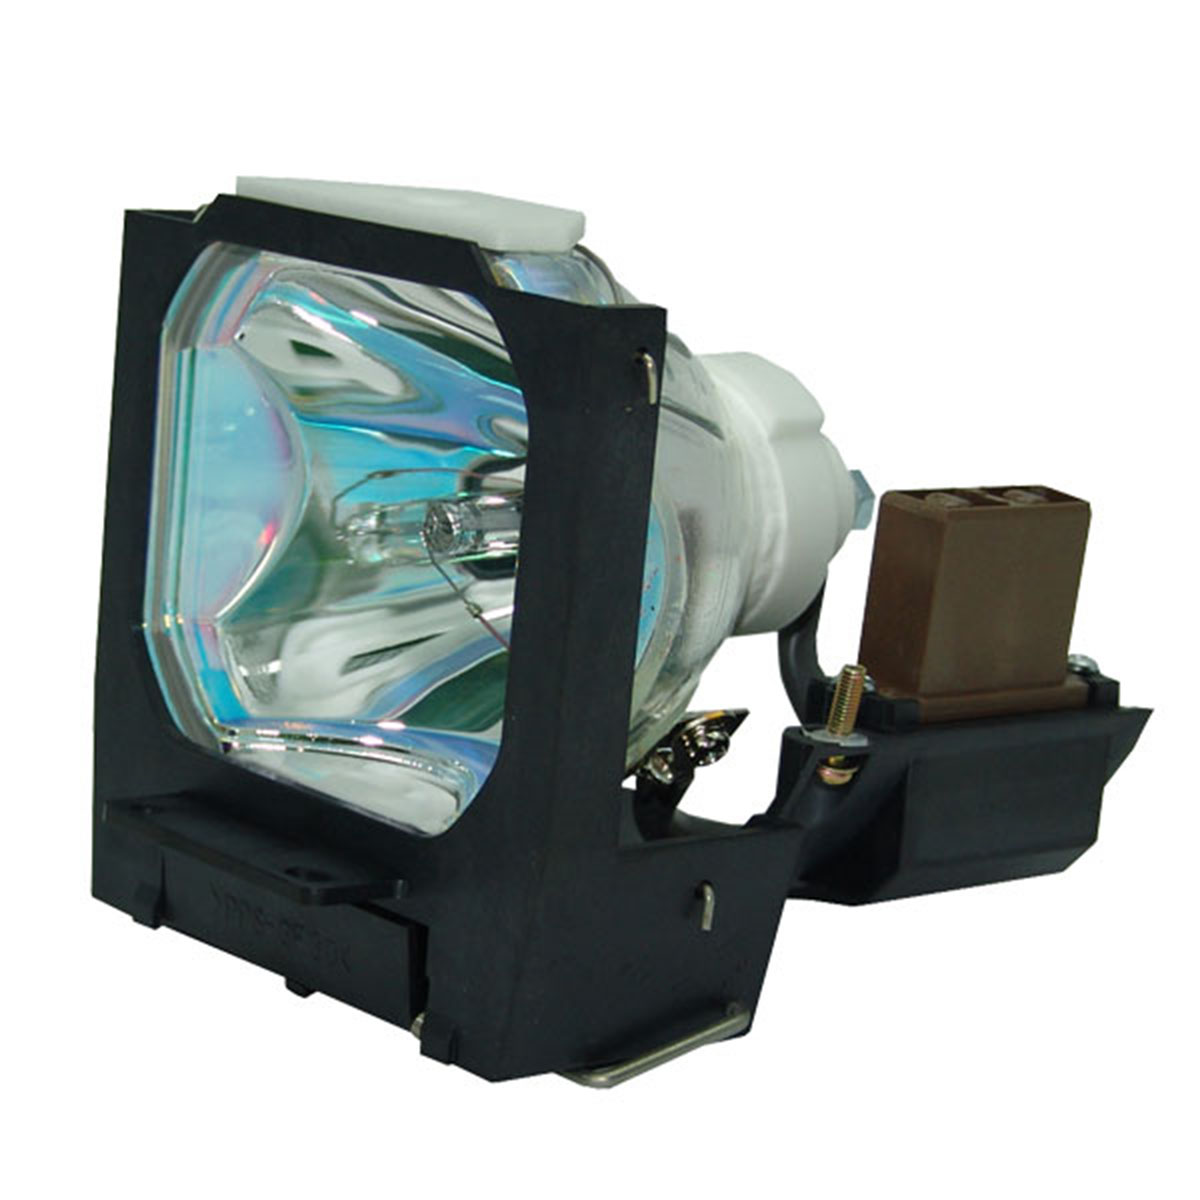 VLT-X300LP Infocus LP770 Projector Lamp